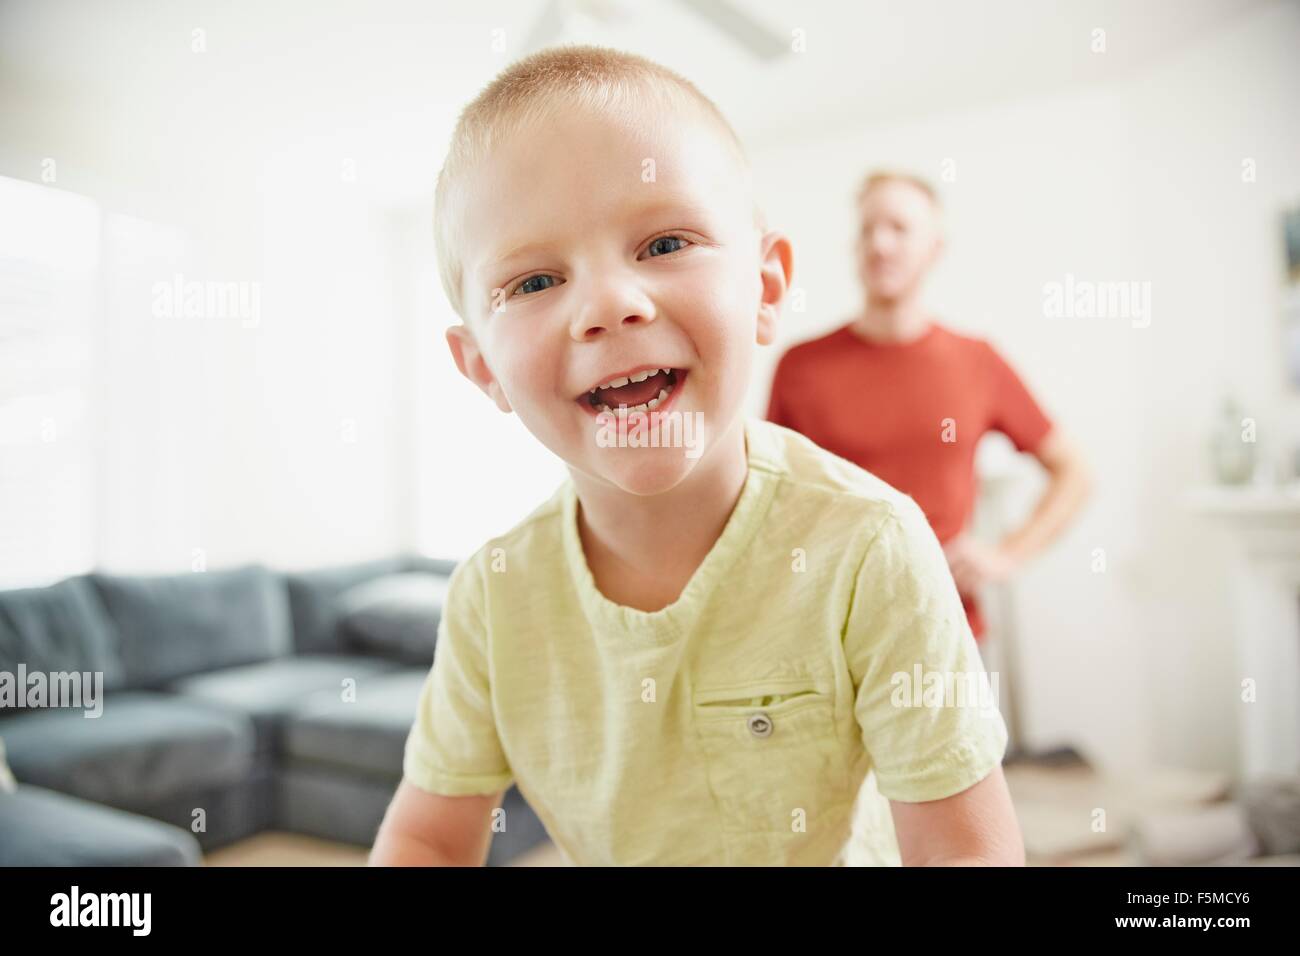 Boy smiling in living room, père en arrière-plan Banque D'Images